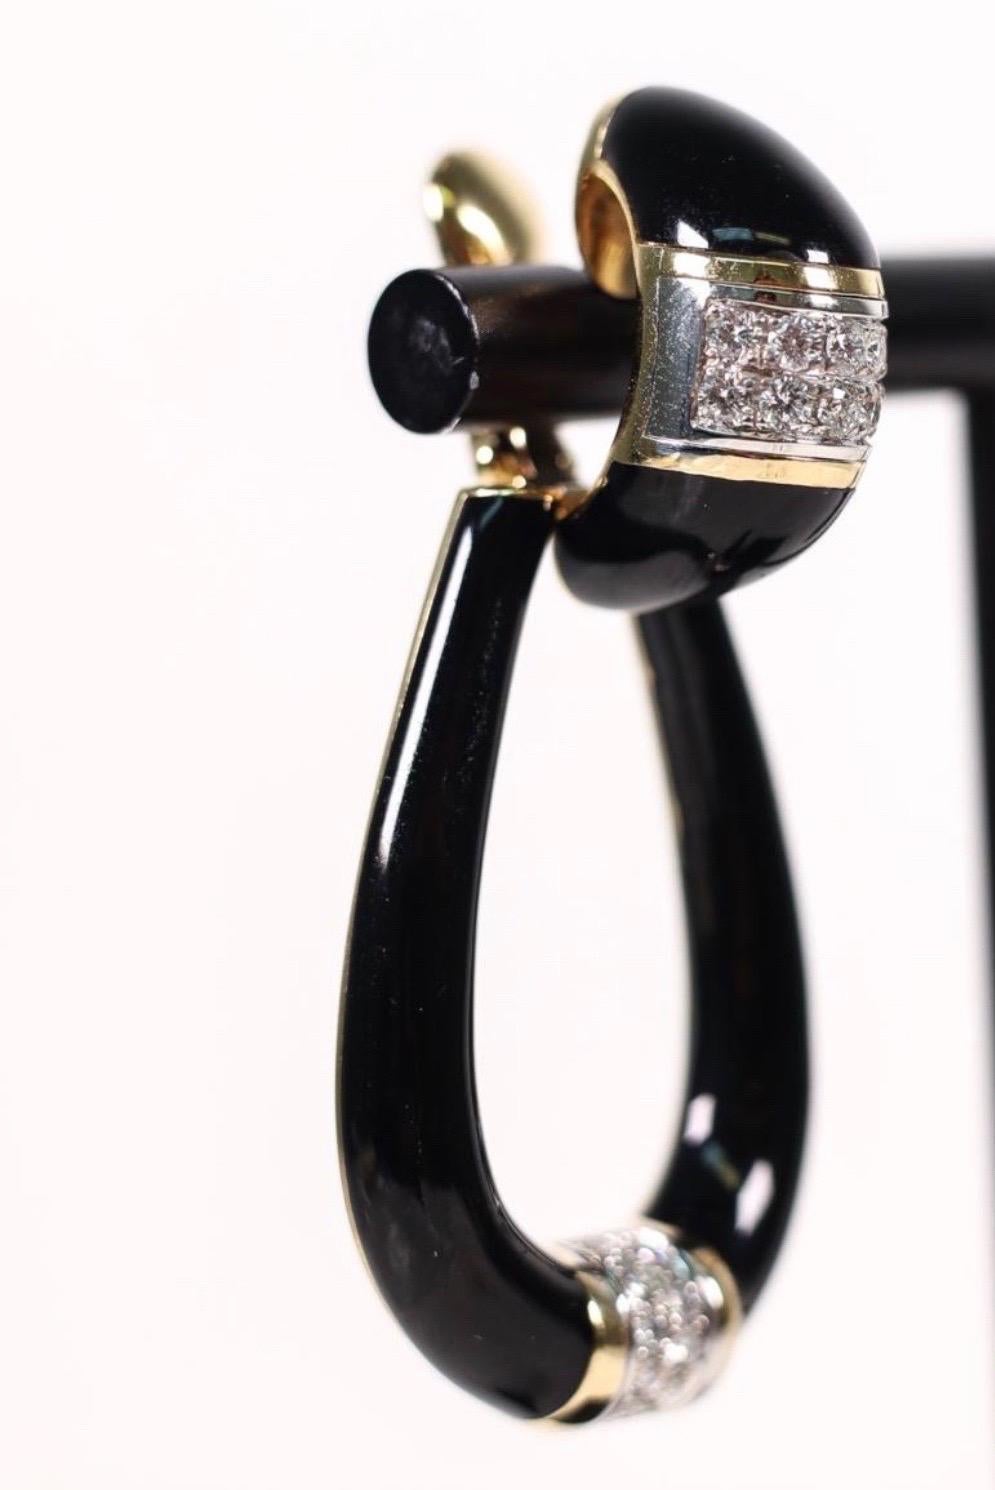 Magnifiques boucles d'oreilles à clip en émail noir de David Webb, de style vintage, avec des fonds amovibles. Les boucles d'oreilles pourraient facilement être converties en dos de poteau et d'oméga.
L'émail est en excellent état et est rehaussé